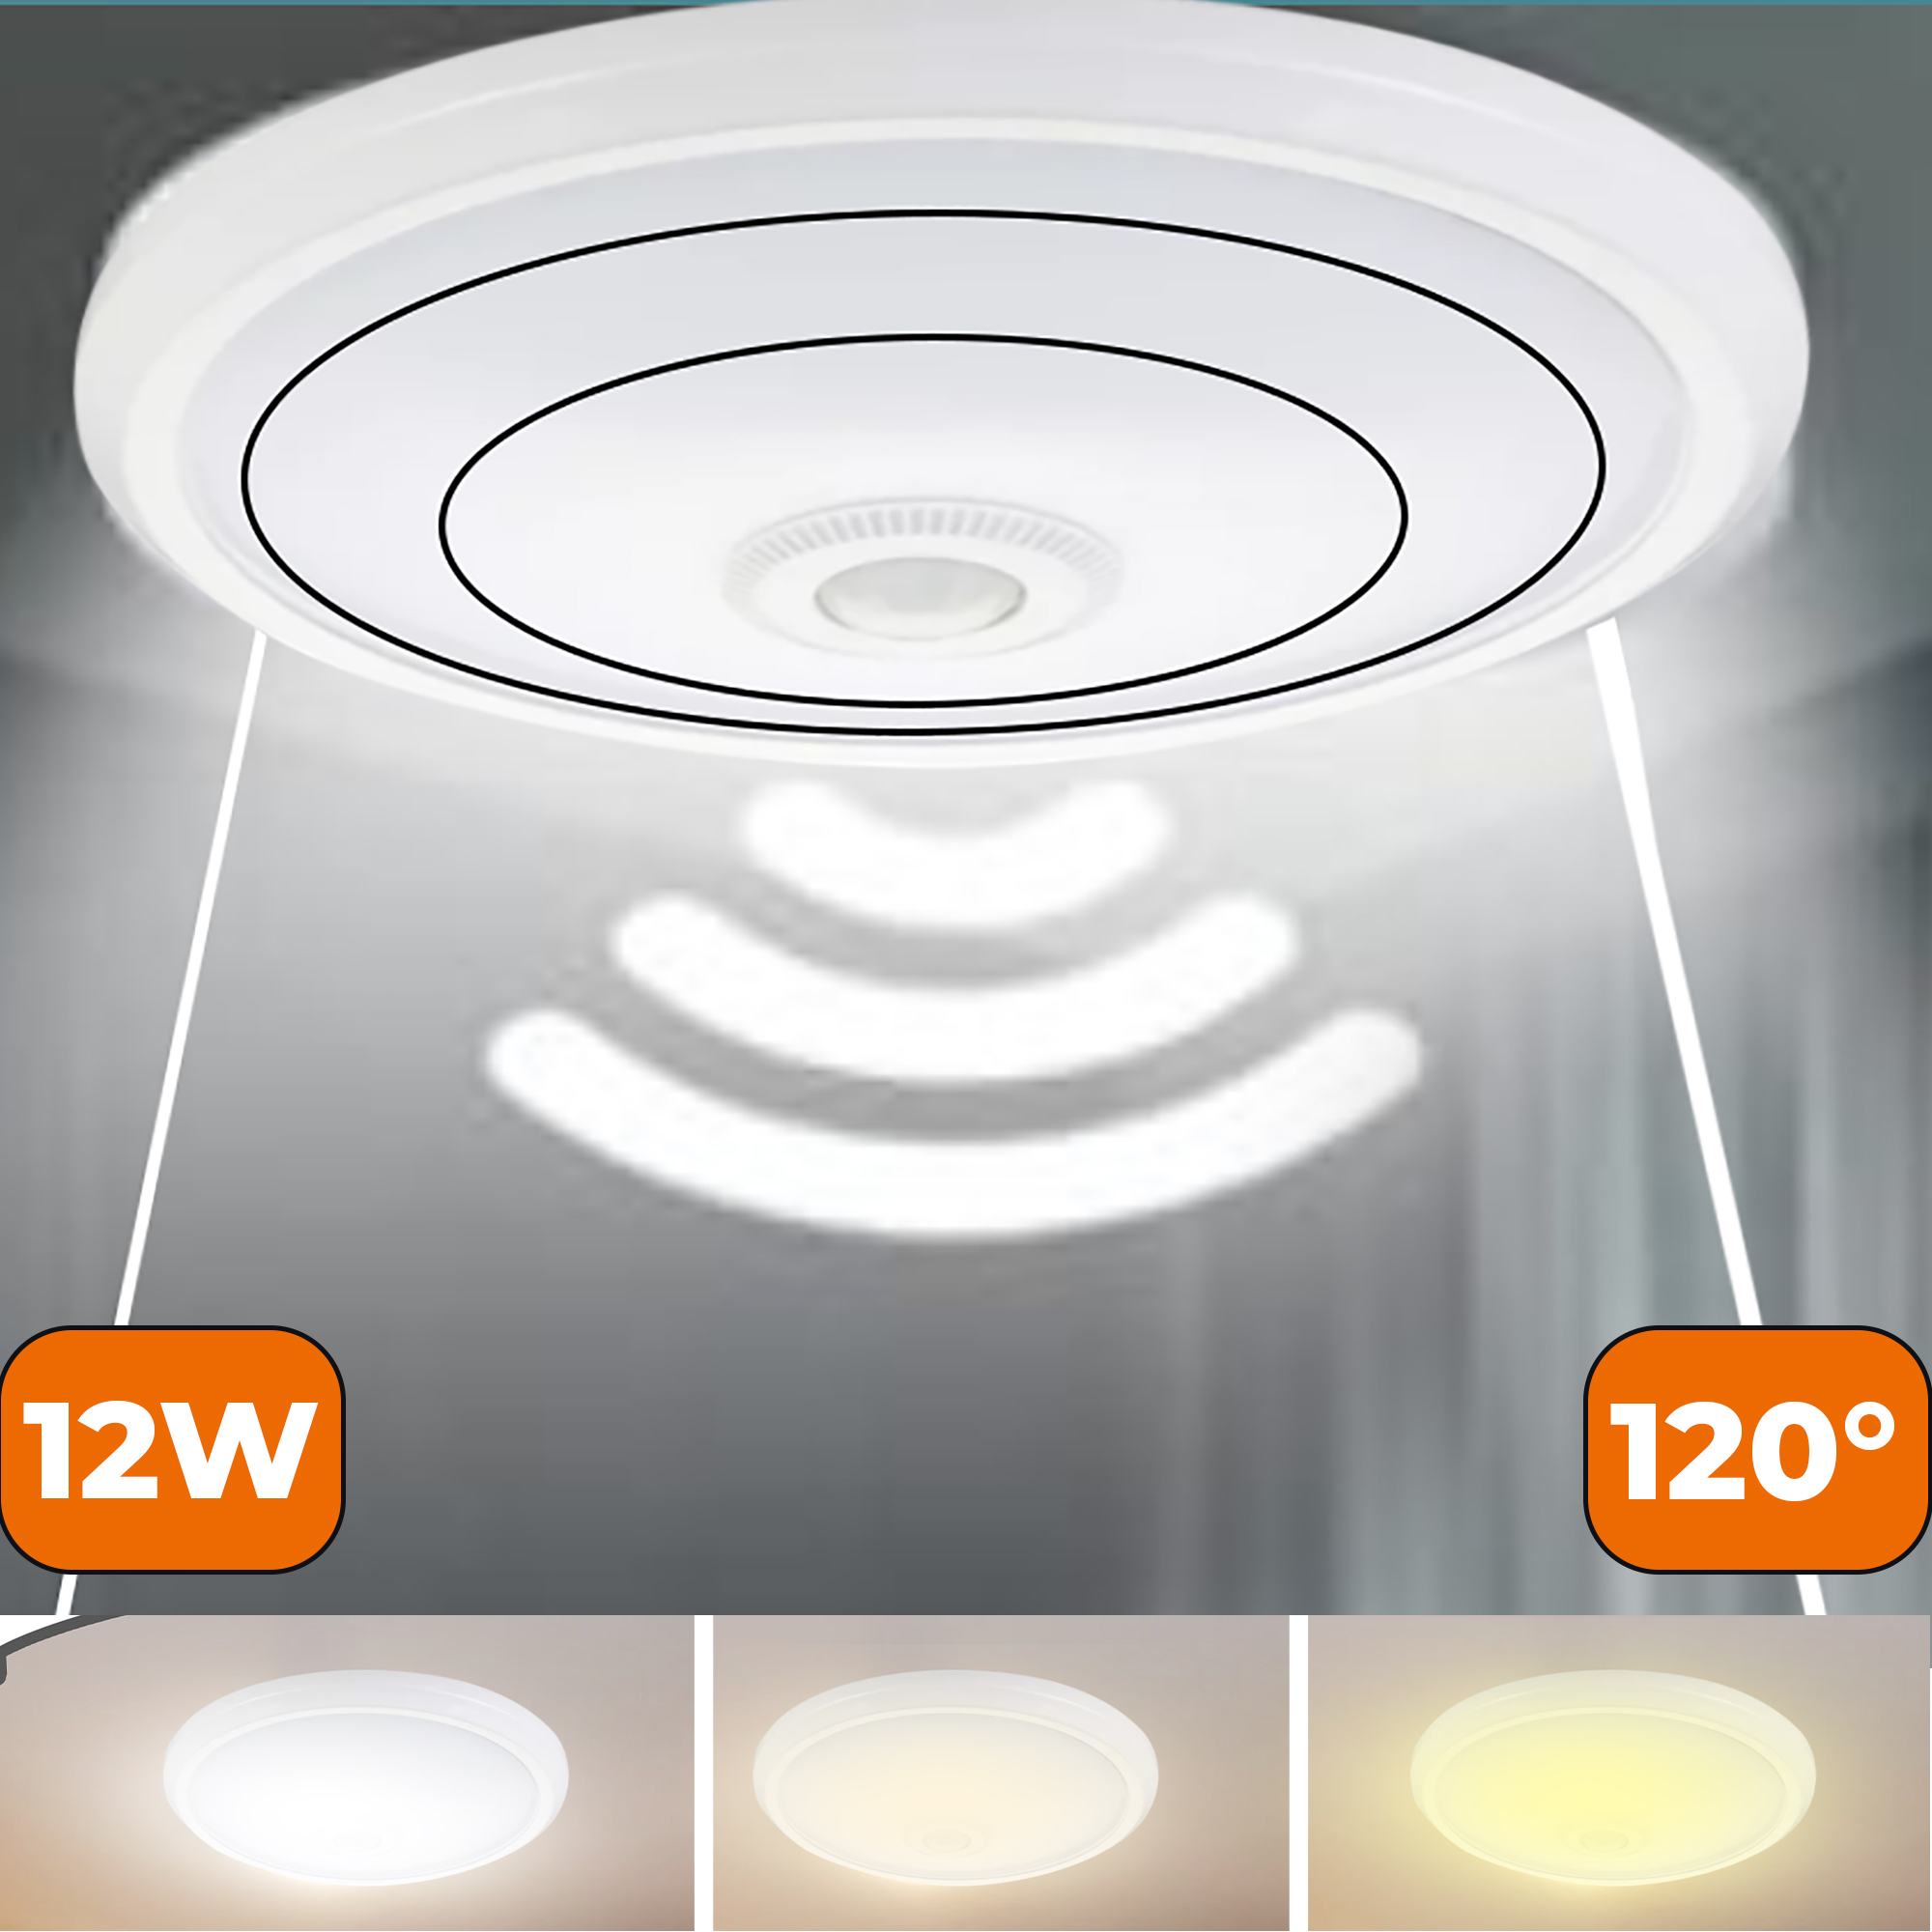 LED Deckenlampe mit Bewegungsmelder Sensorlampe Flurleuchte Deckenleuchte 12W 820LM